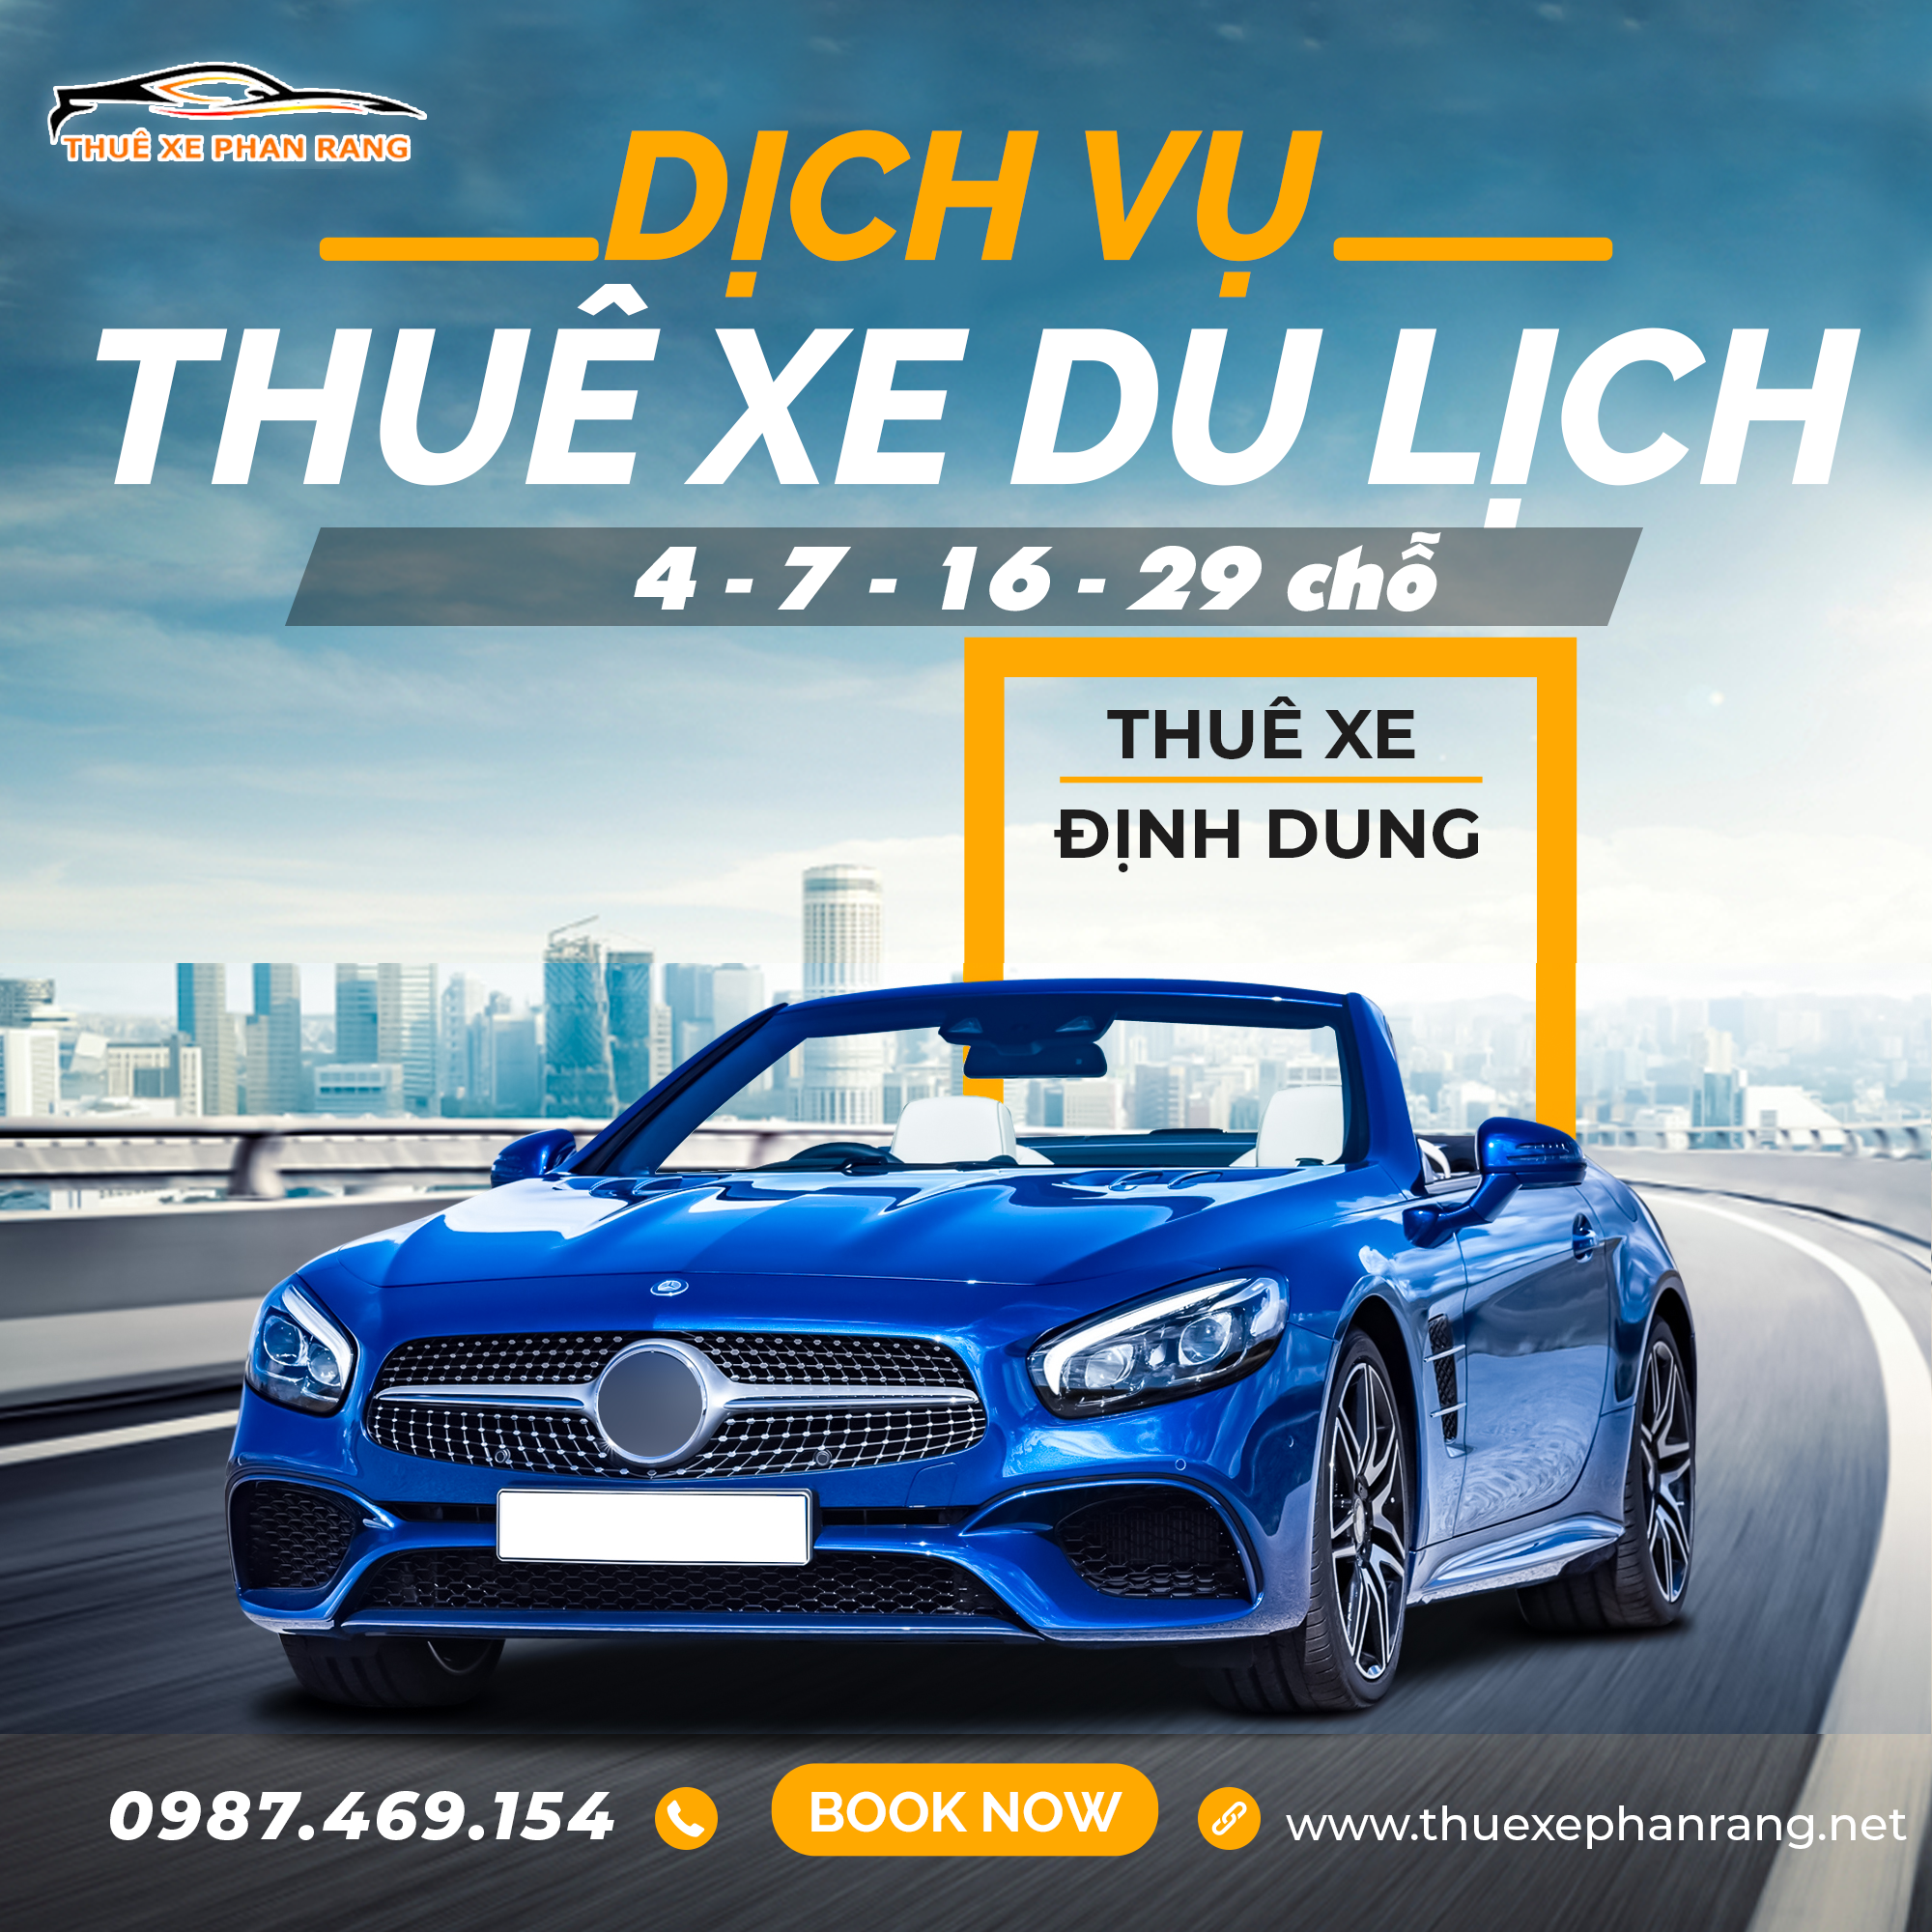 Thuê xe du lịch Phan Rang Ninh Thuận giá rẻ | Định Dung